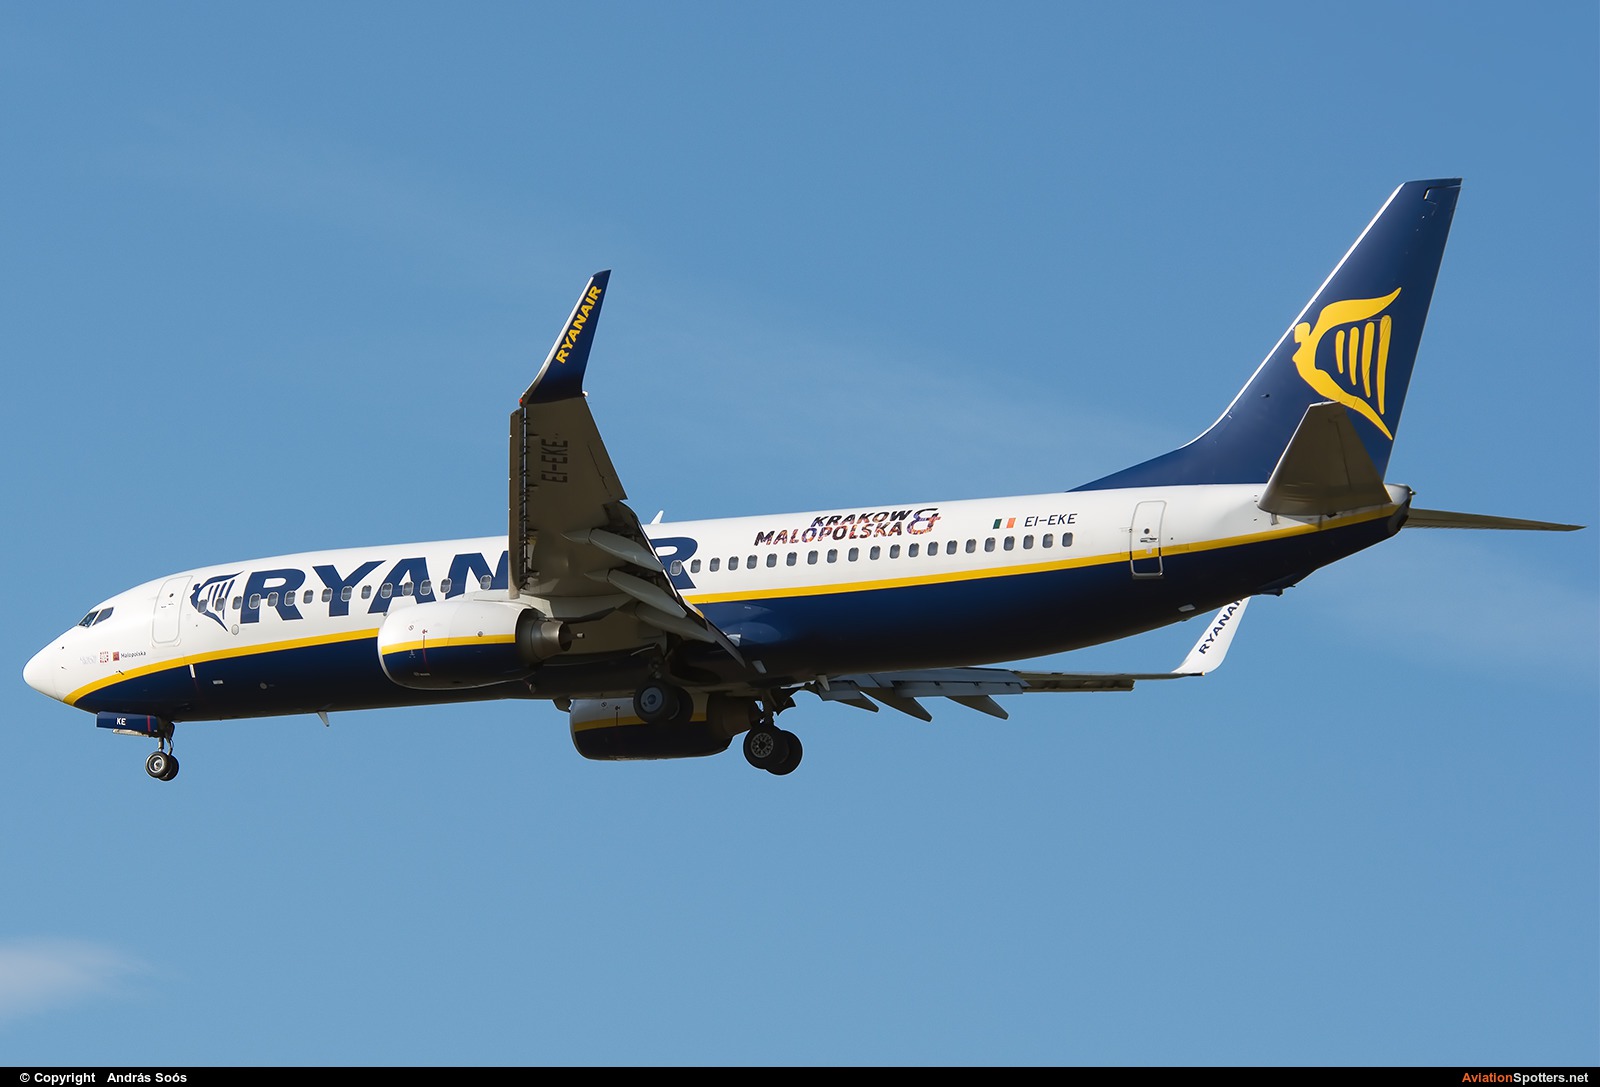 Ryanair  -  737-800  (EI-EKE) By András Soós (sas1965)